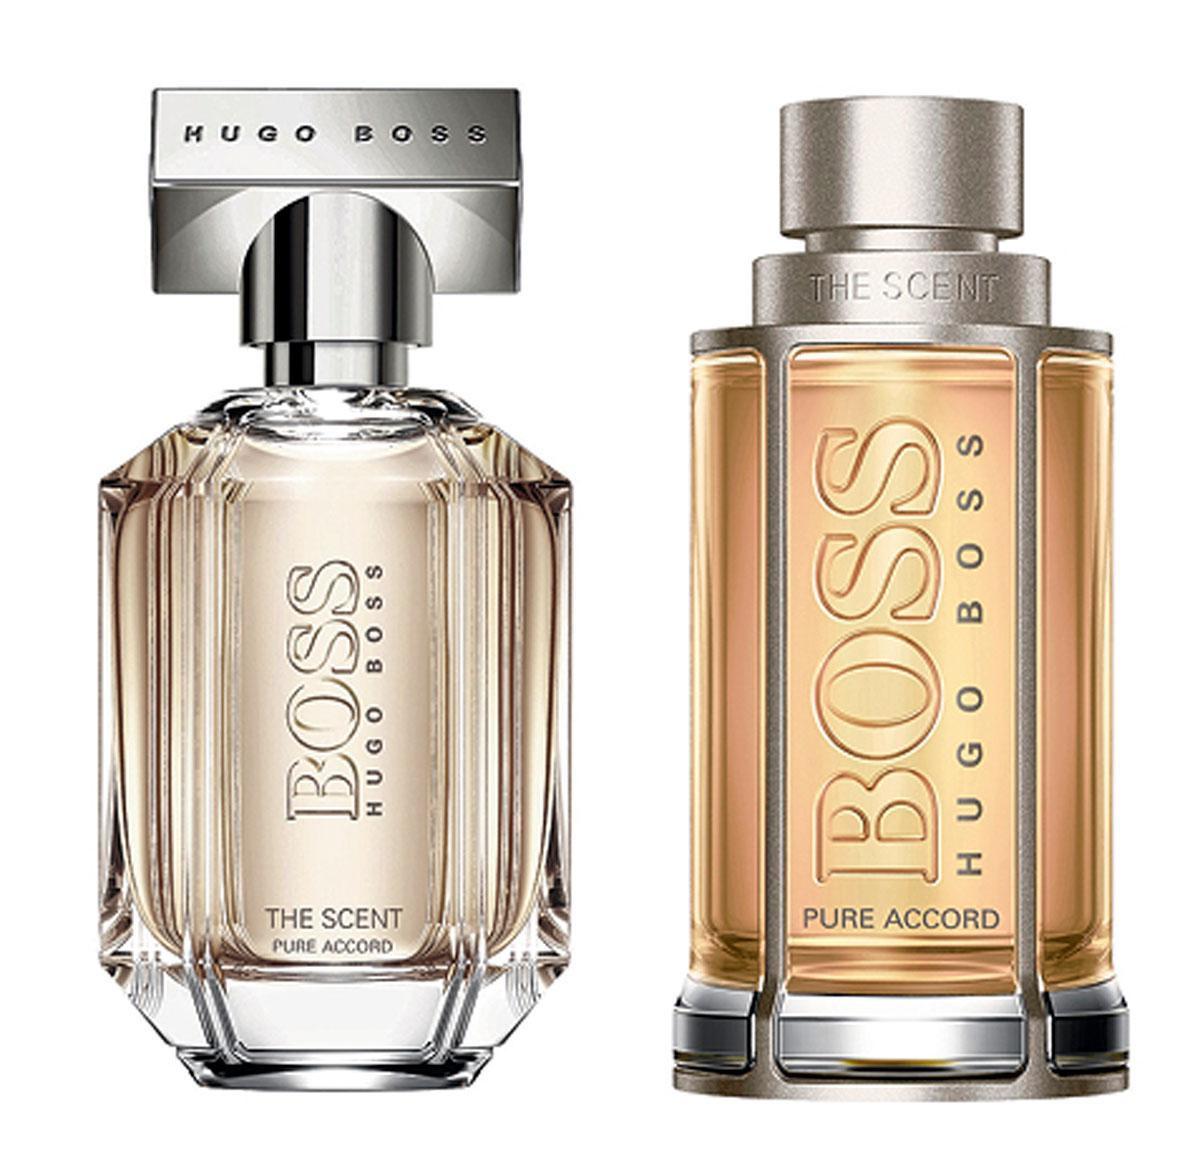 Boss The Scent Pure Accord for Him & for Her biedt een nieuwe kijk op verleiding. Geef er gerust aan toe! 76 euro en 81 euro voor 50 ml, in de parfumerie.